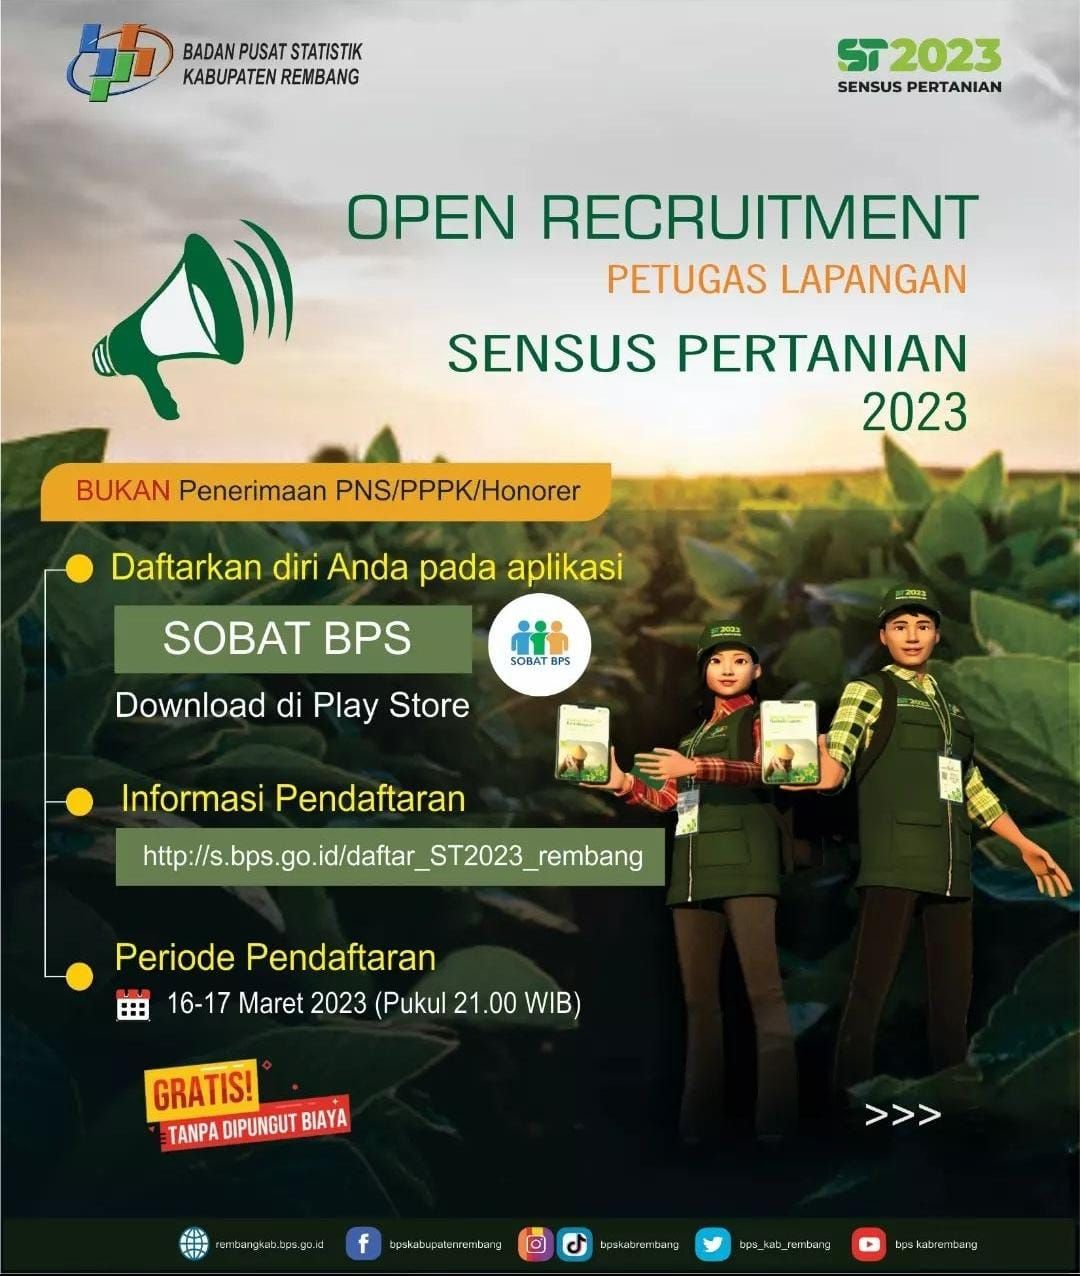 Rekrutmen Petugas Sensus Pertanian 2023 Kabupaten Rembang, Simak Jadwal Rekrutmen dan Cara Mendaftar!